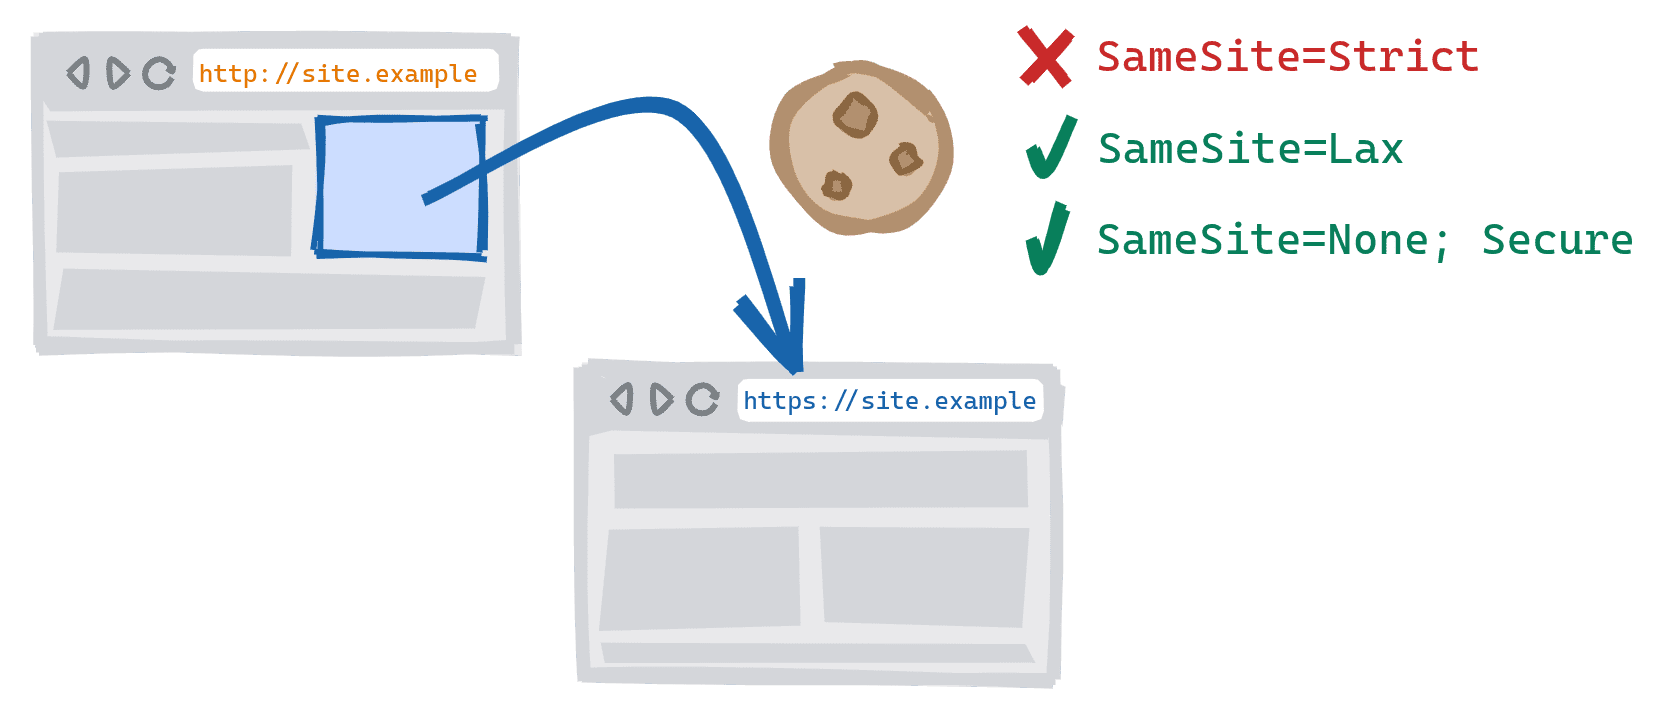 Una navigazione tra schemi che viene attivata seguendo un link presente nella versione HTTP non sicura di un sito alla versione HTTPS protetta. SameSite=Cookie rigorosi bloccati, SameSite=Lax e SameSite=None; cookie sicuri consentiti.